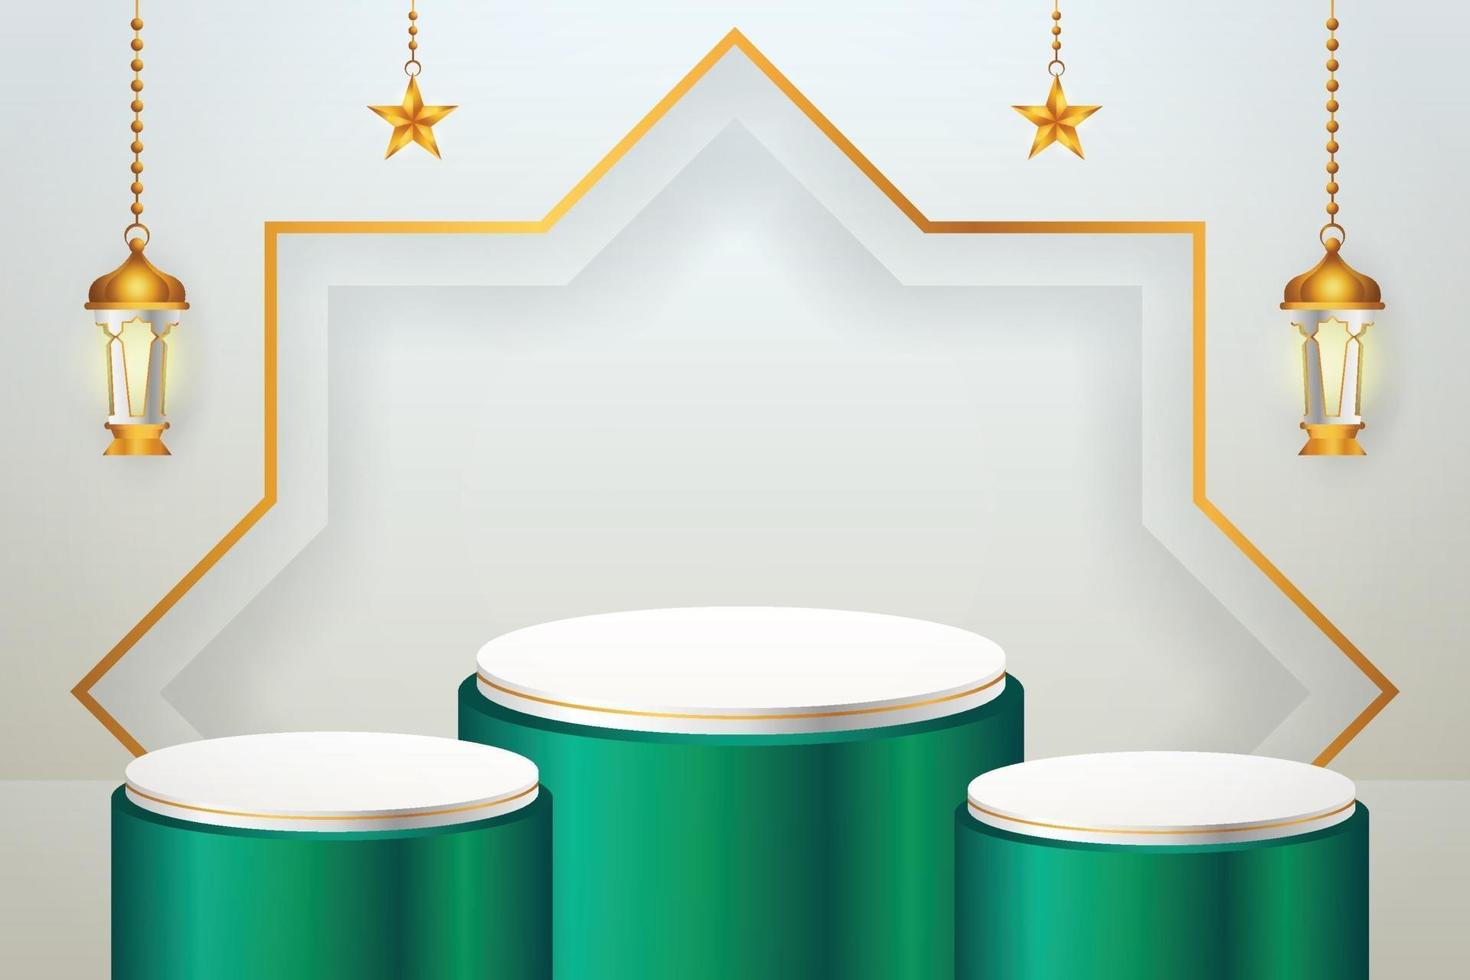 Exibição de produto 3D islâmico com tema de pódio verde e branco com lanterna e estrela para o ramadã vetor